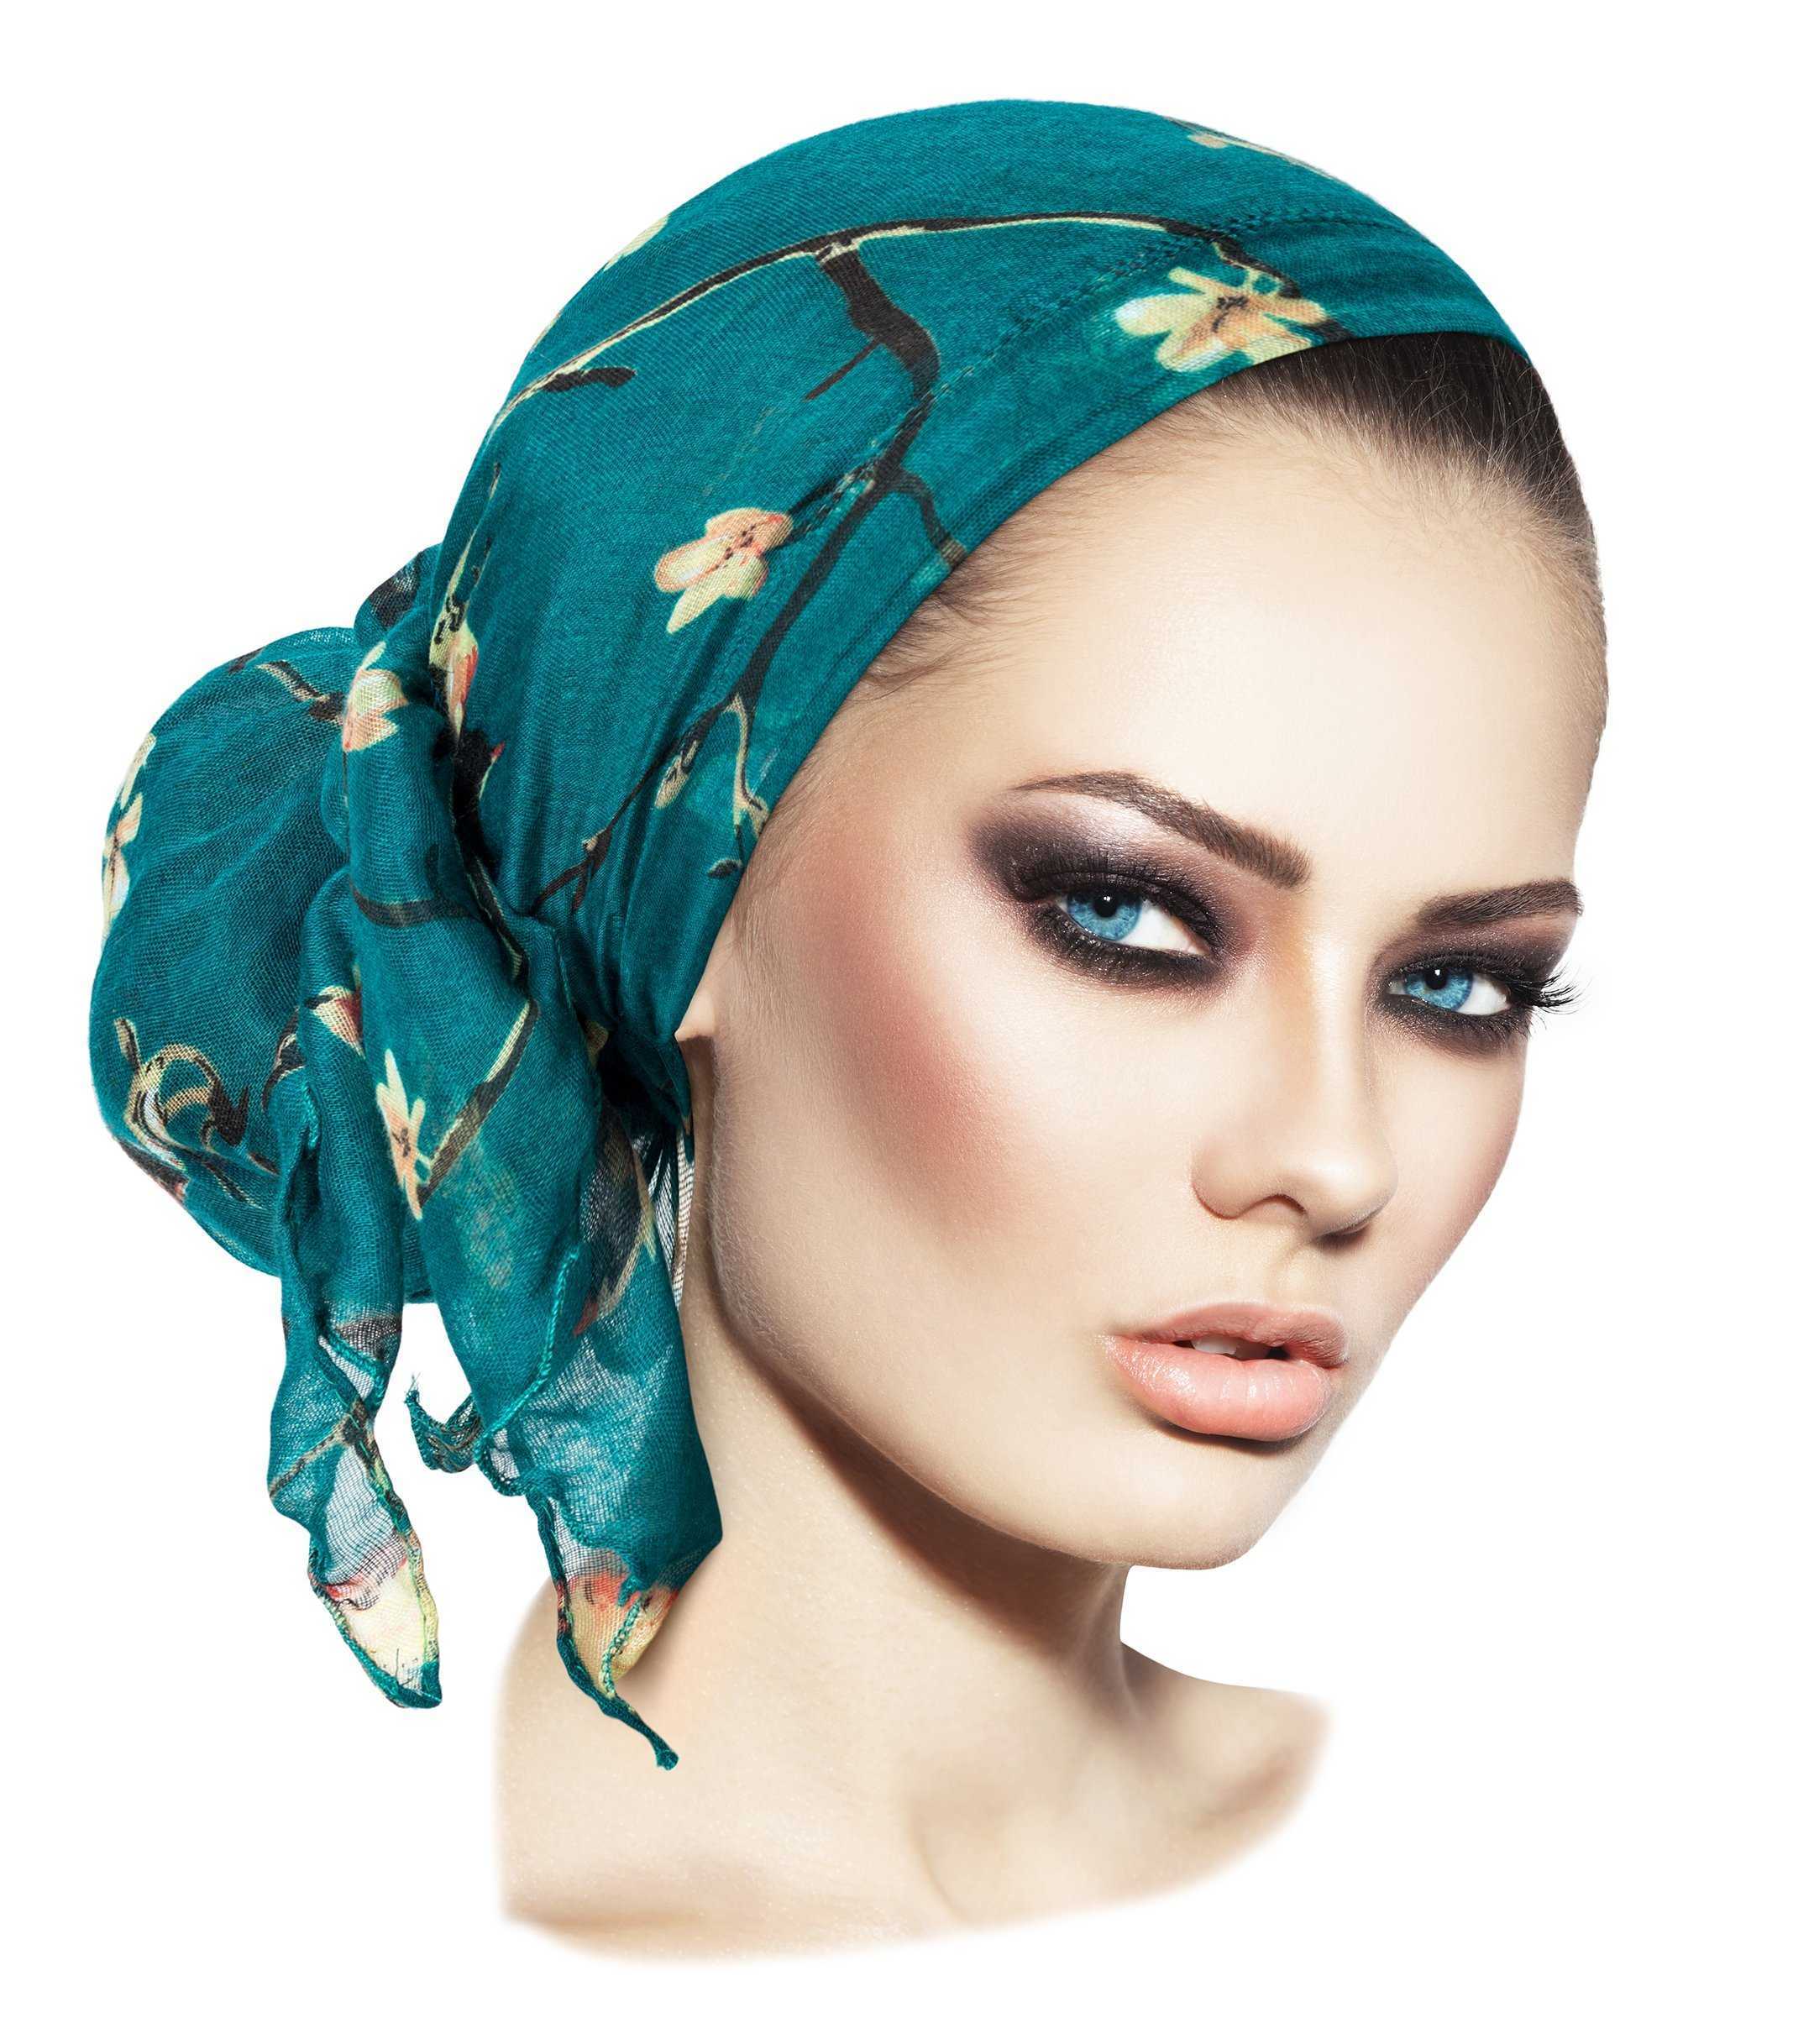 Красиво повязанный платок на голове